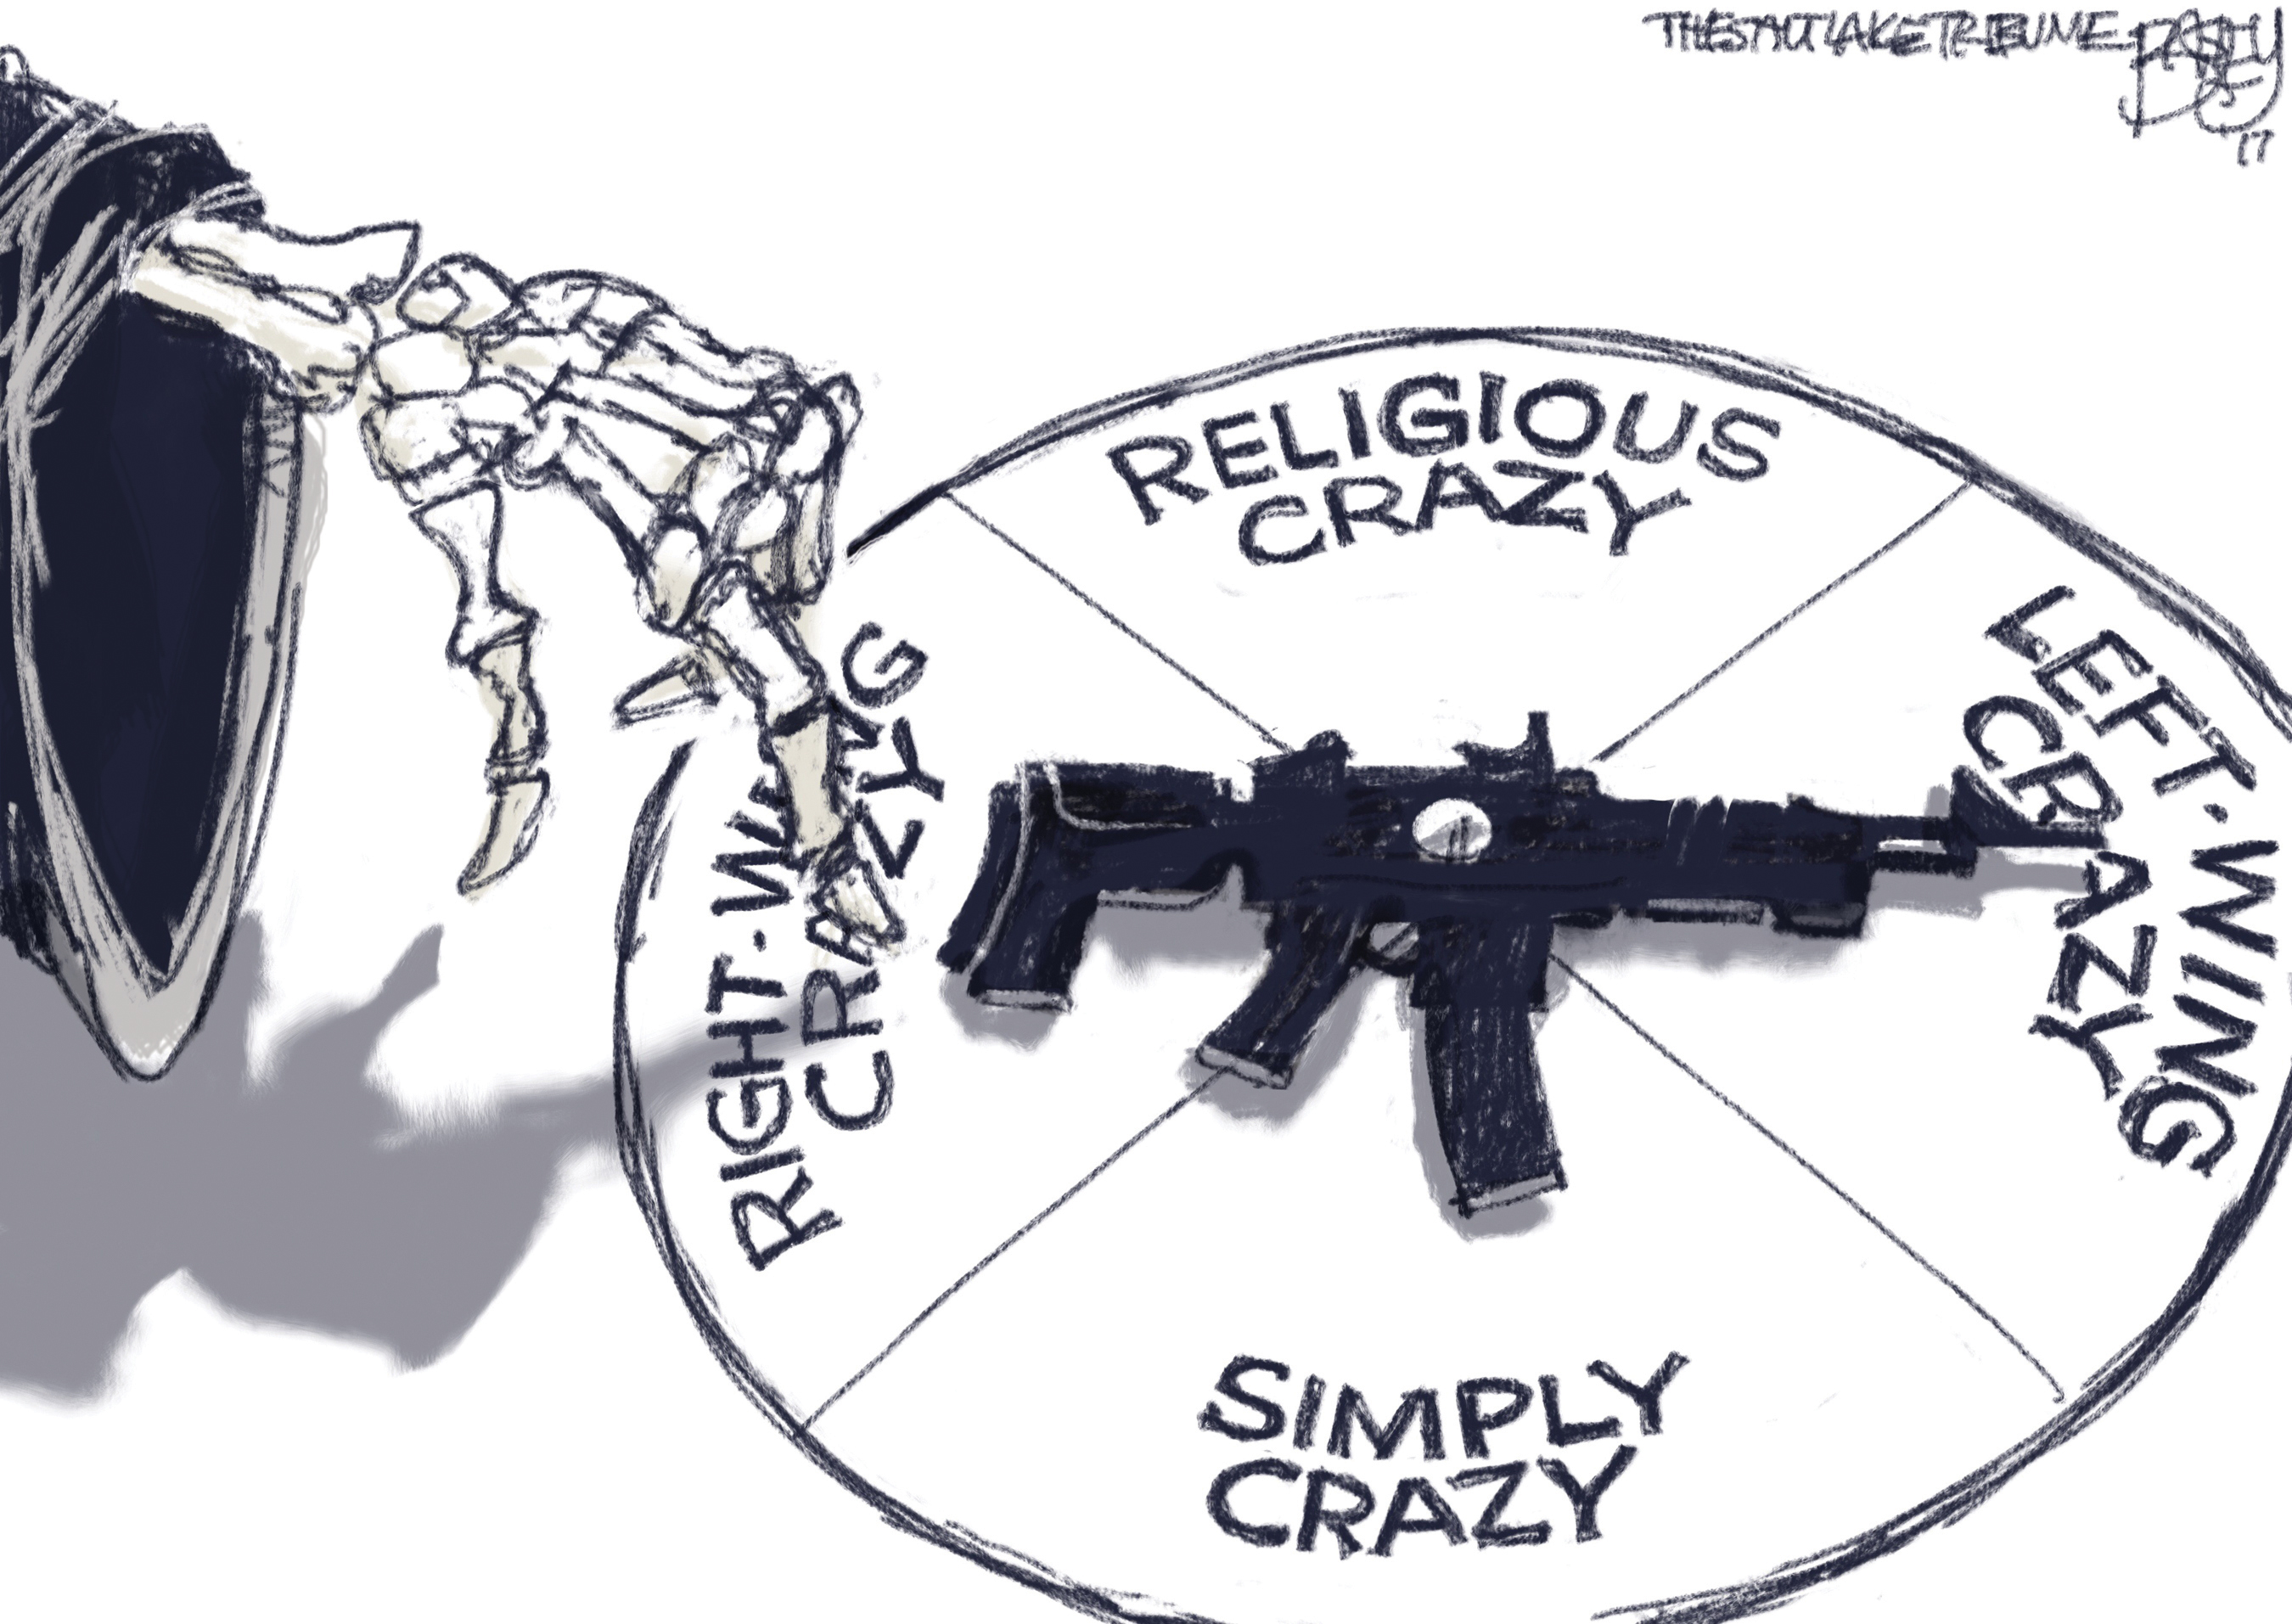 Political cartoon U.S. Congress baseball shooting fidget spinner